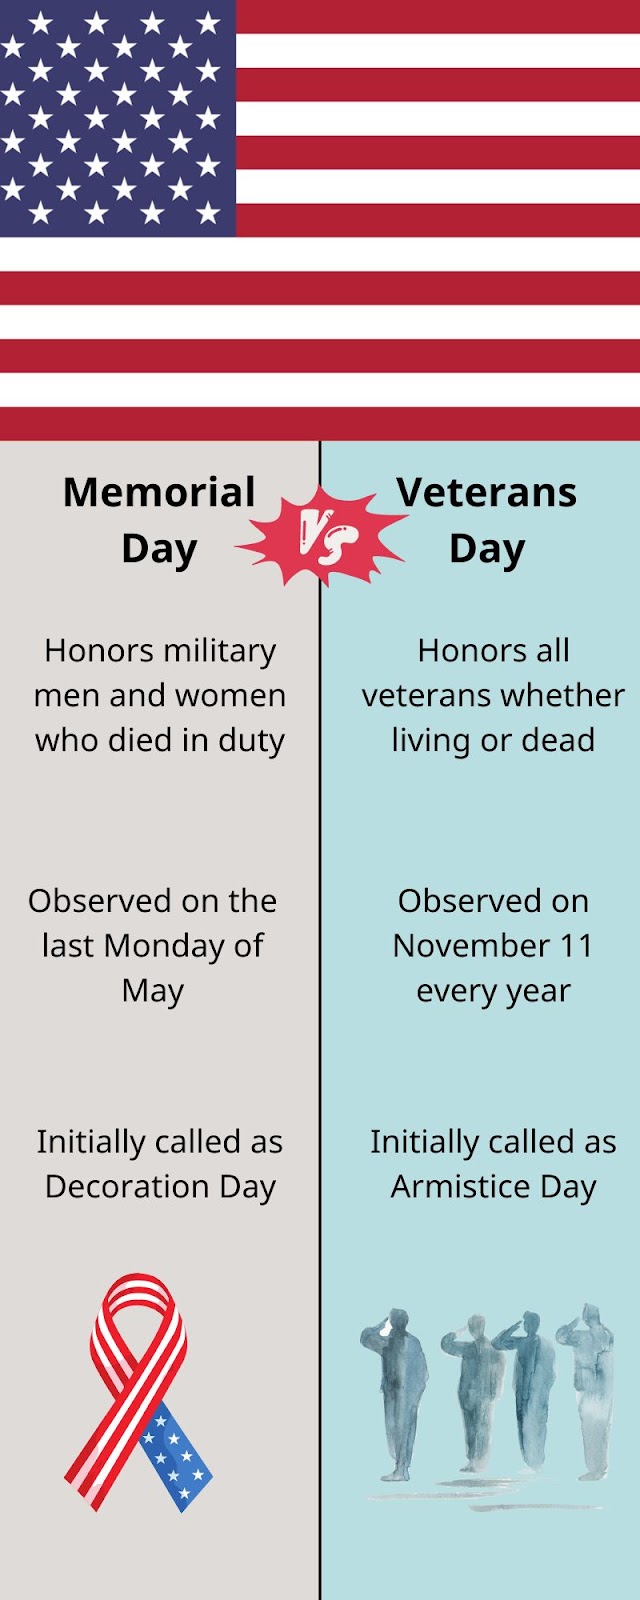 Memorial Day Vs Veterans Day